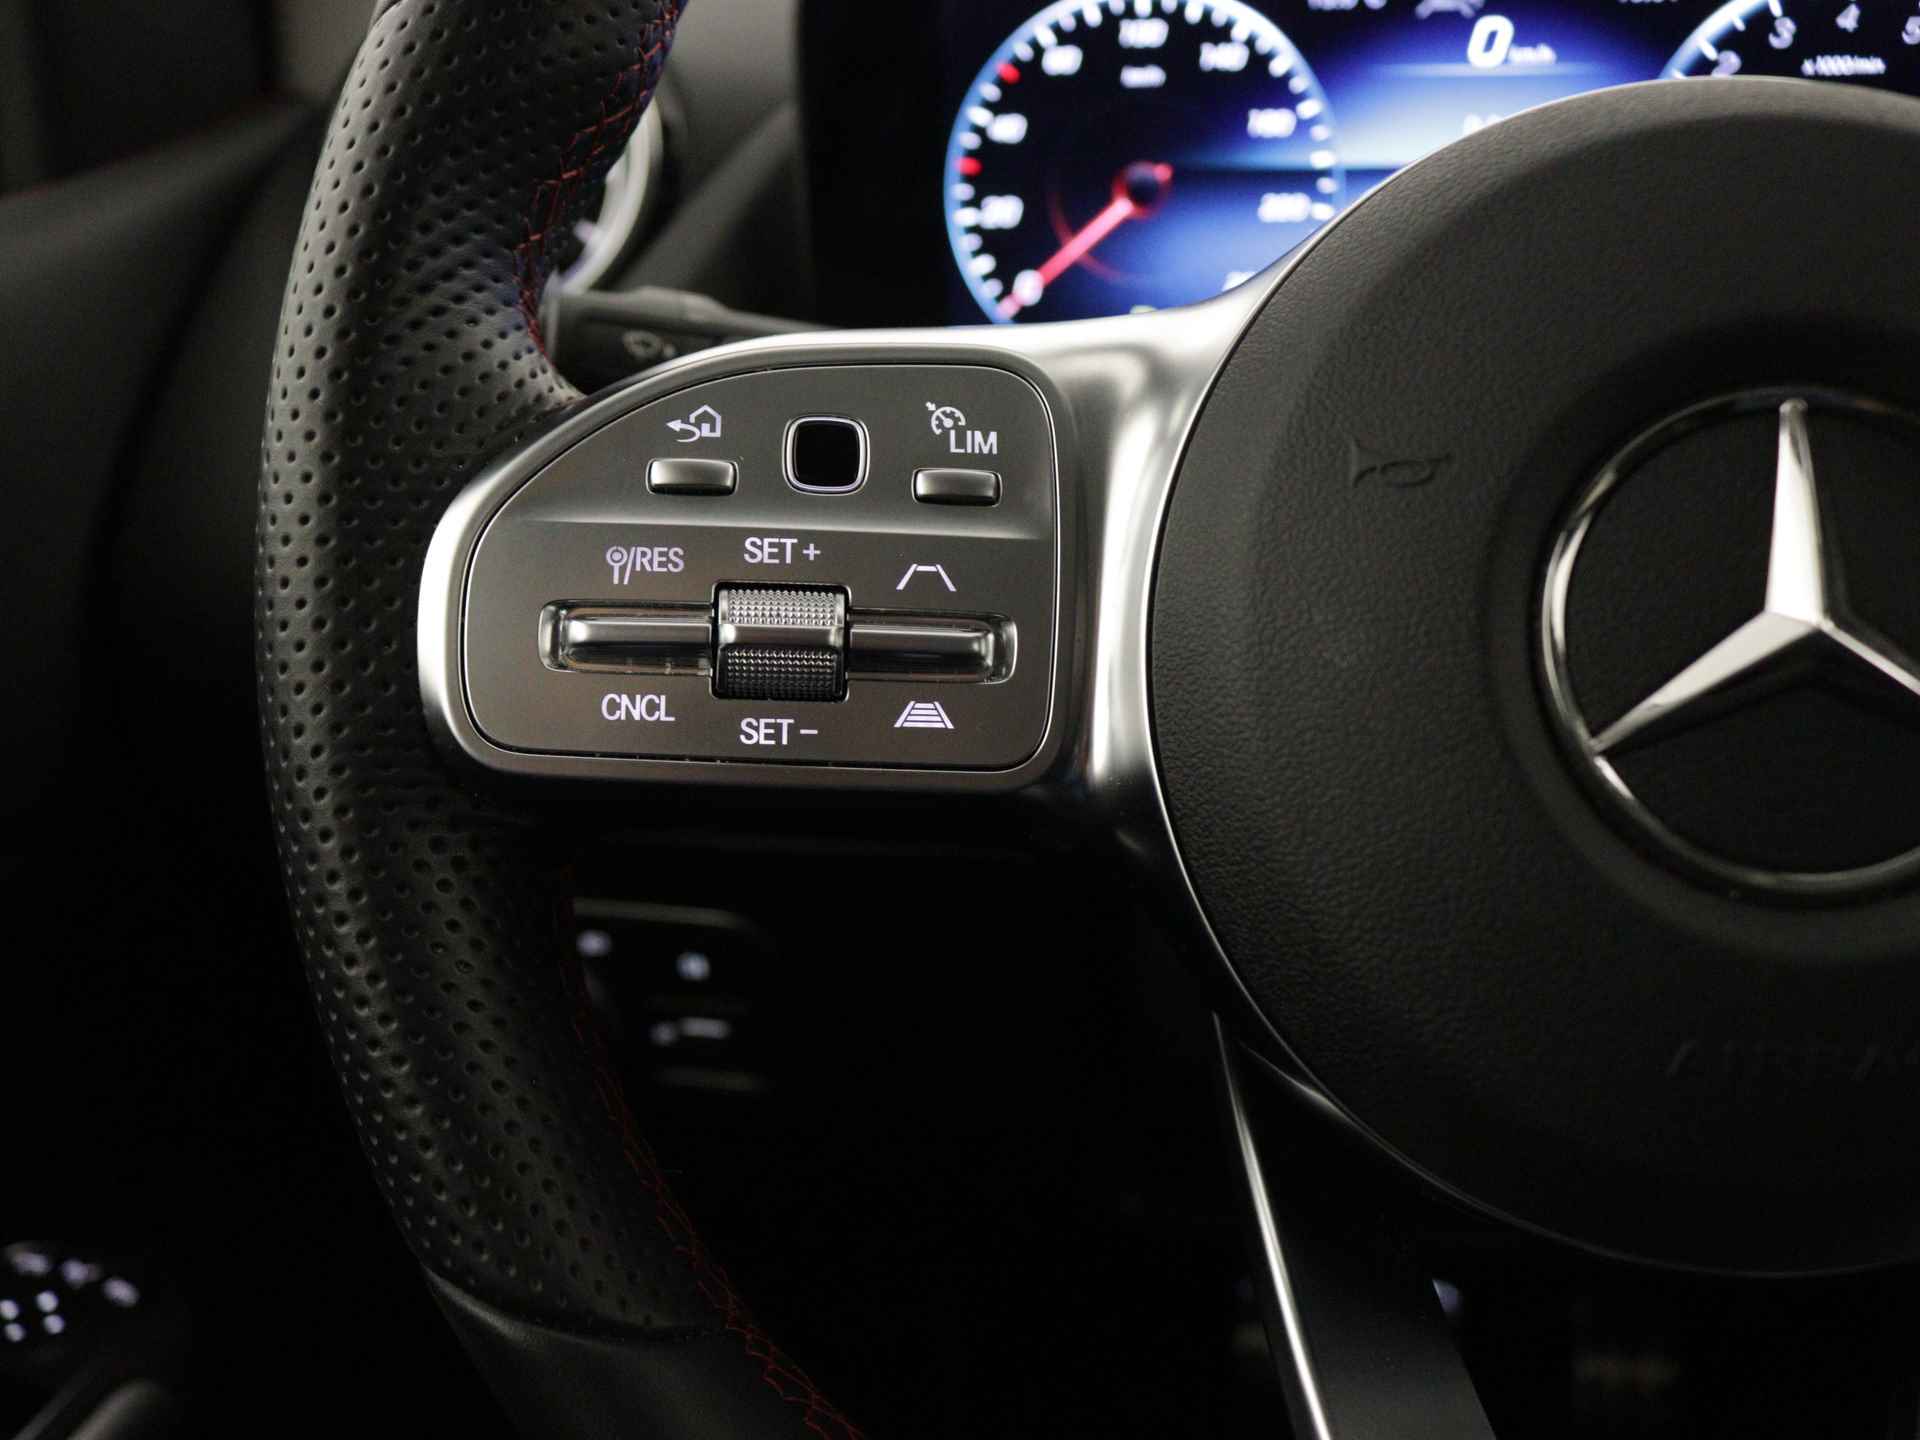 Mercedes-Benz B-Klasse 250 e AMG Line Limited Multispaaks lichtmetalen velgen | MBUX wide screen | Navigatie | Parking support | Inclusief 24 maanden Mercedes-Benz Certified garantie voor Europa. | - 22/45